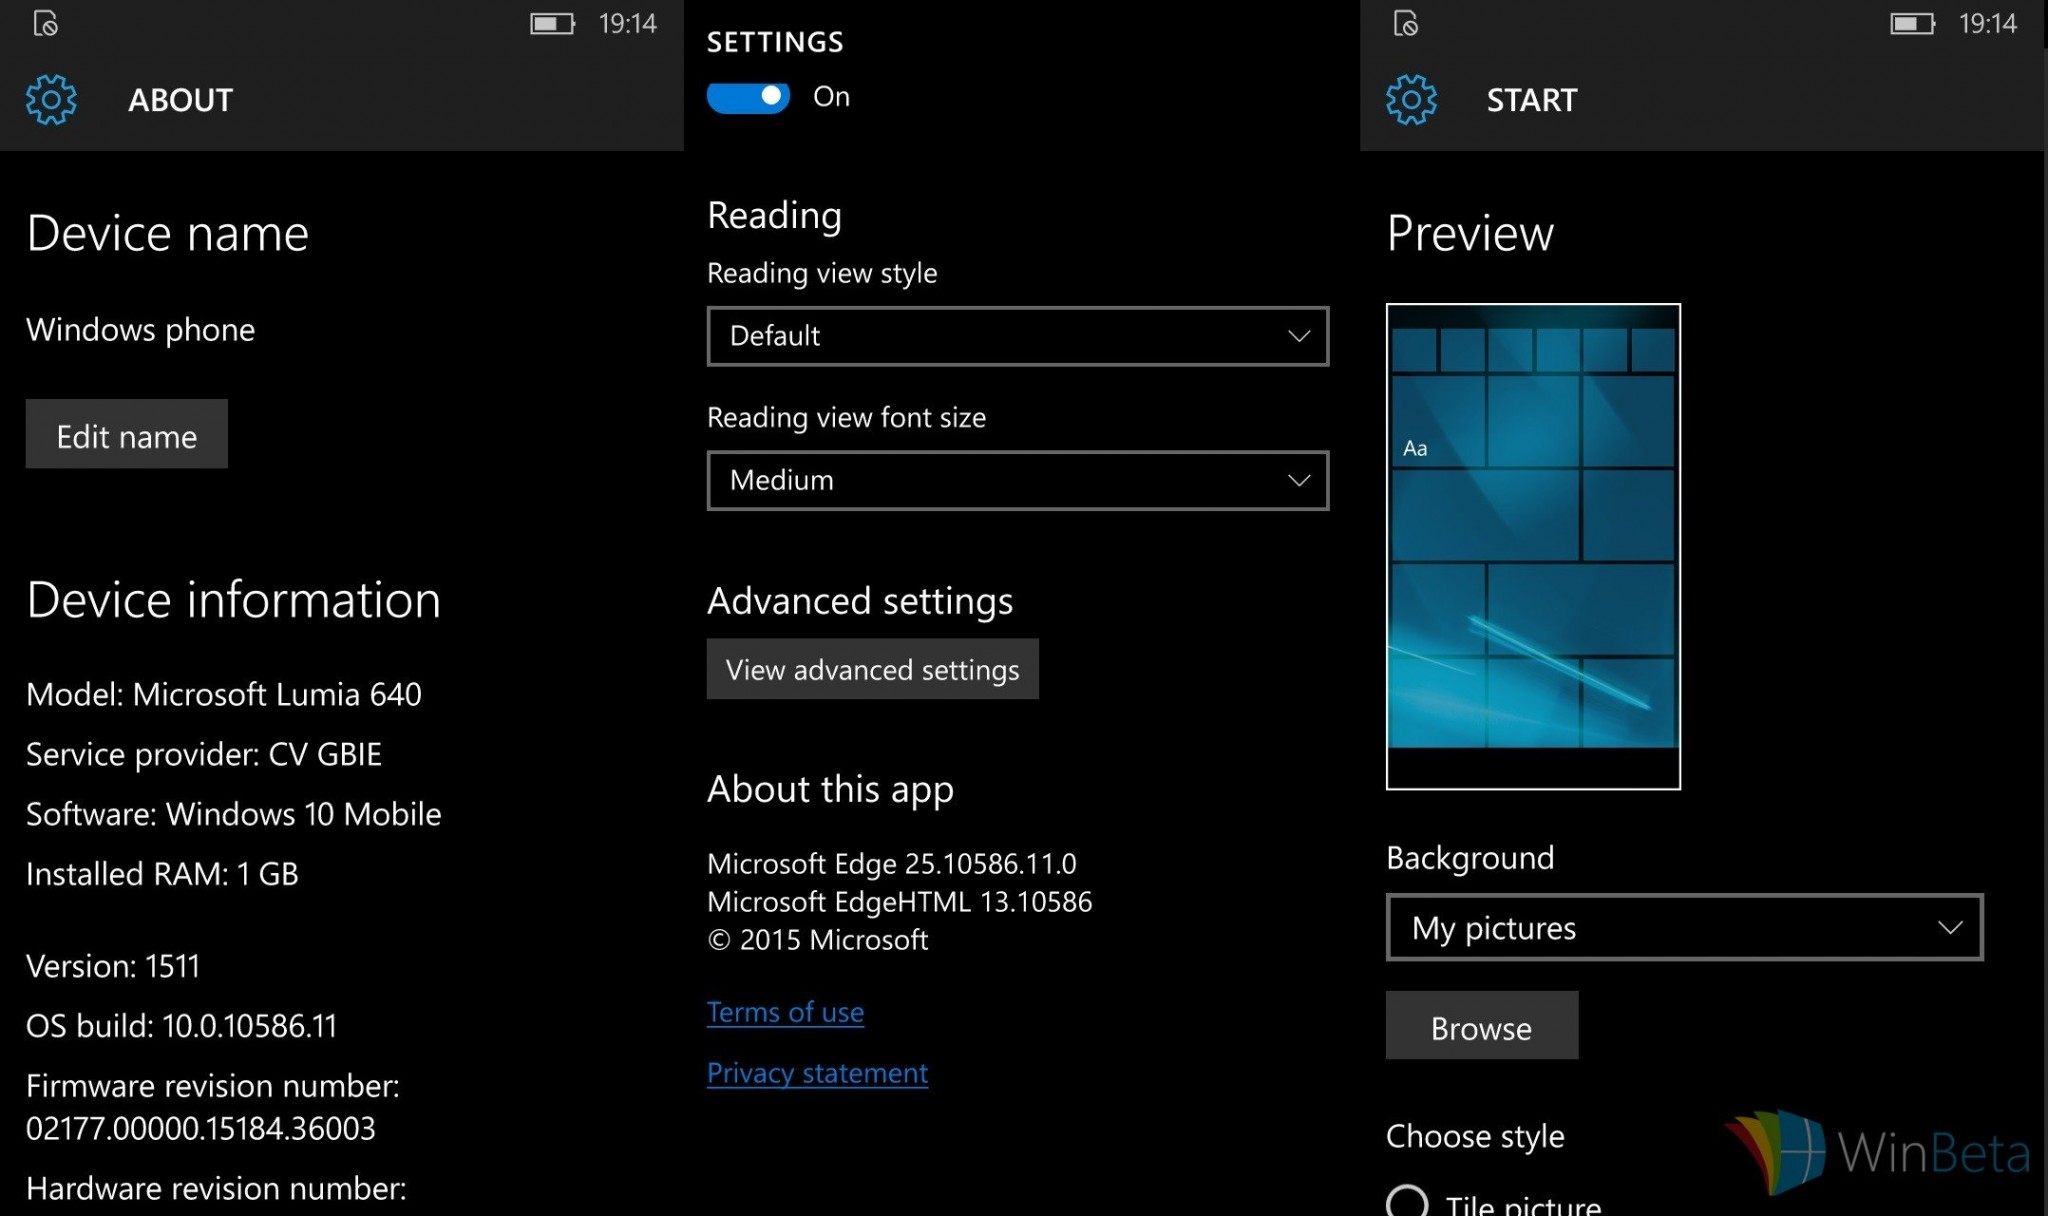 Nuevas capturas de la build 10586.11 de Windows 10 Mobile